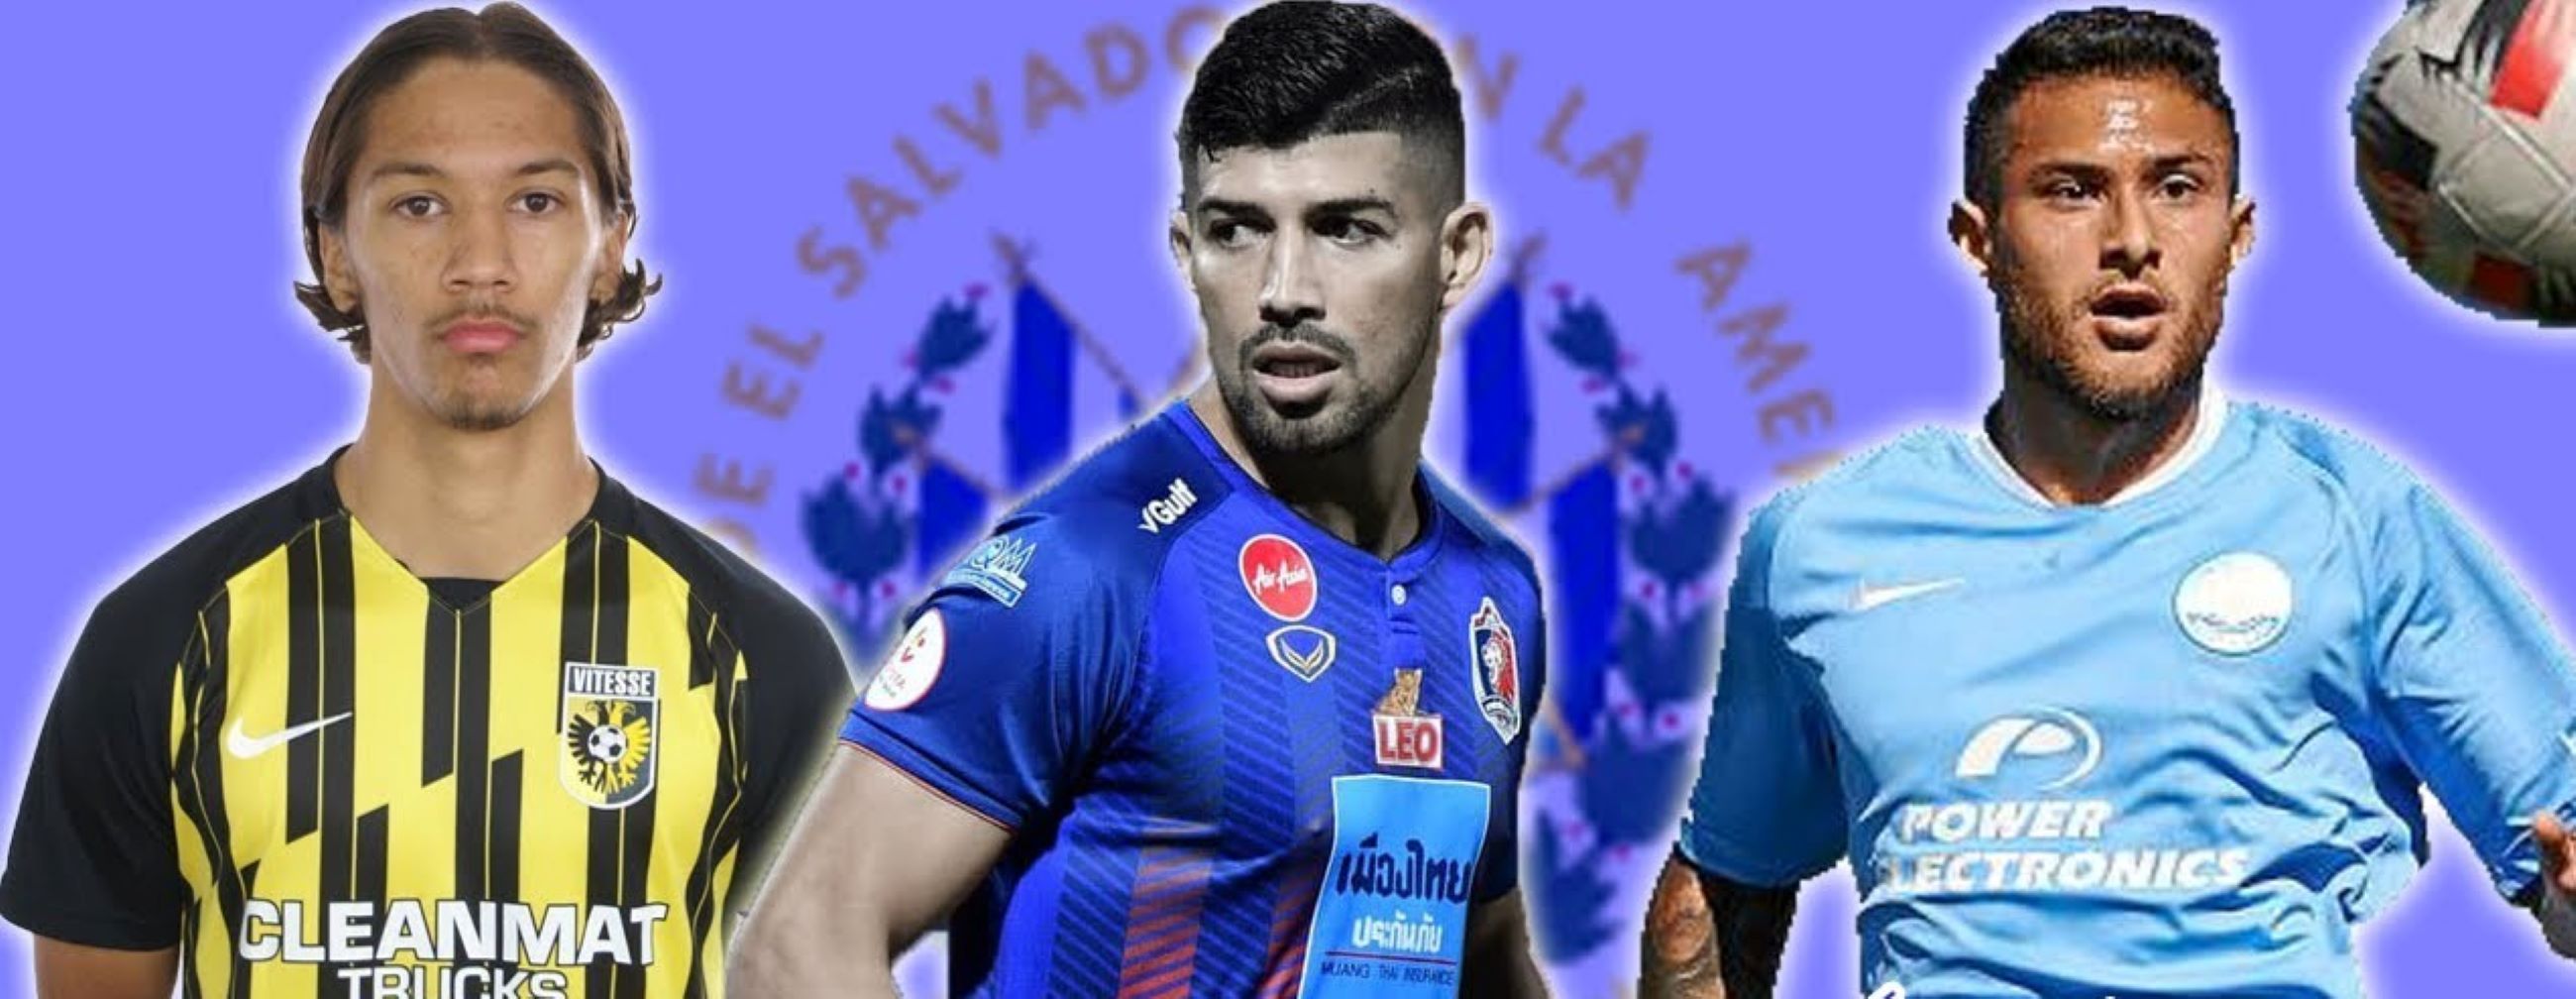 La falta de apoyo al fúbolista salvadoreño se torna en escasas oportunidades de que sean vistos por equipos internacionales 